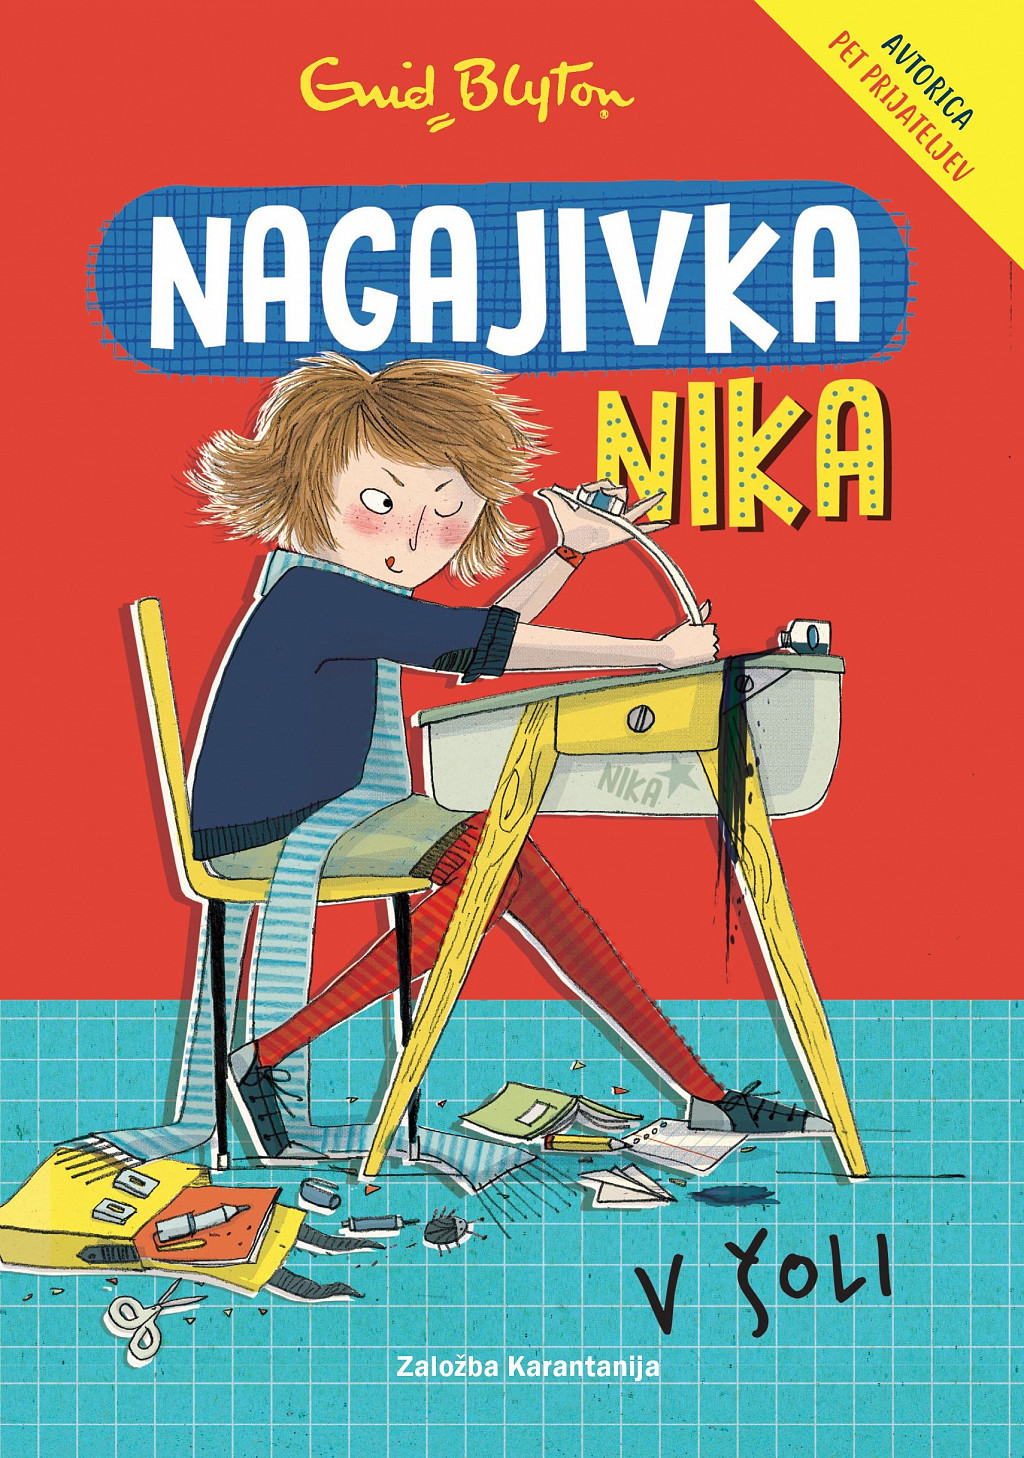 Nagajivka Nika v šoli